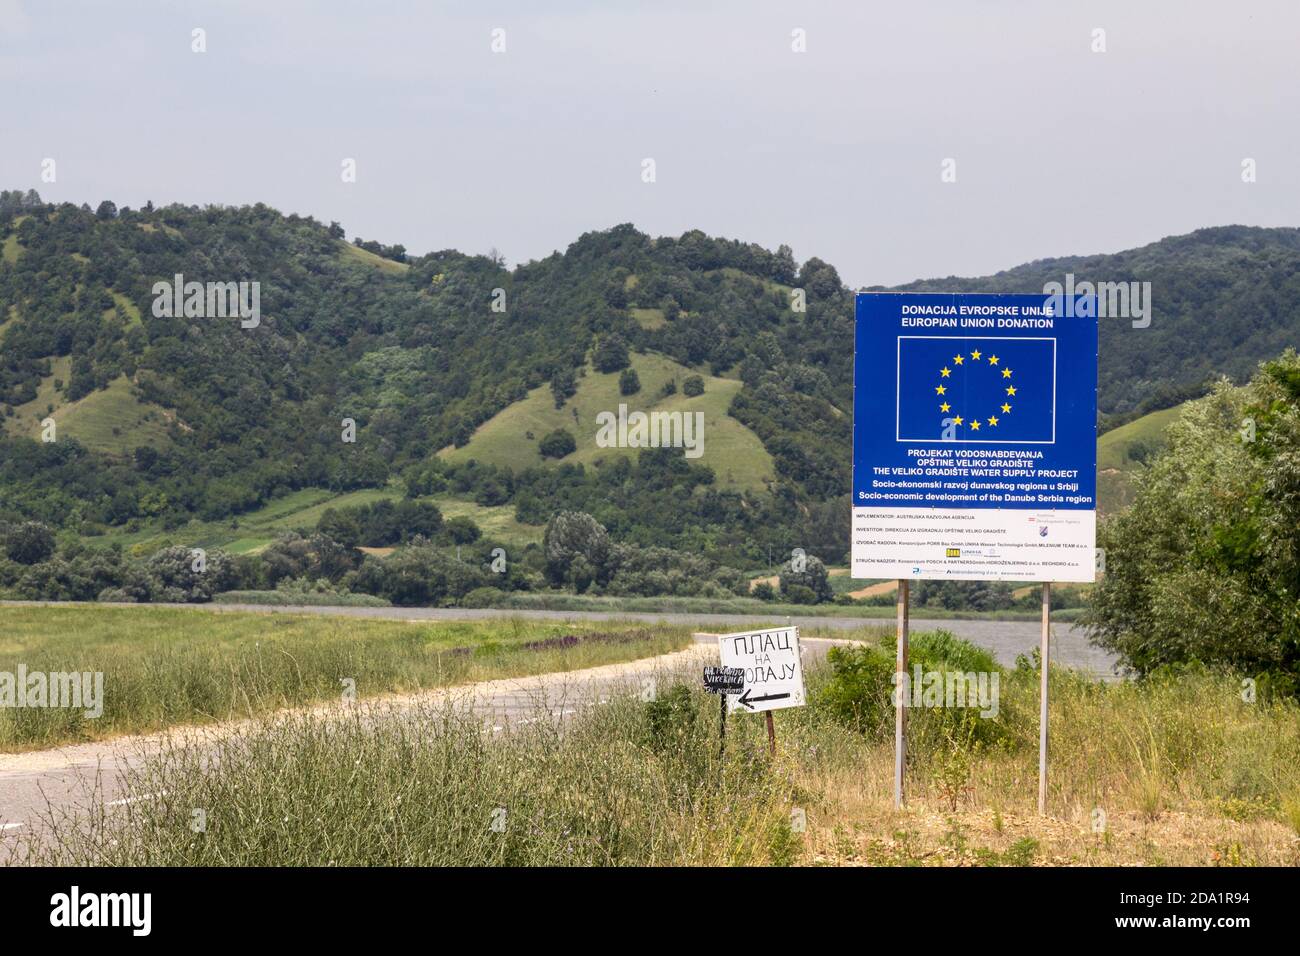 VELIKO GRADISTE, SERBIEN - 26. JUNI 2016: Straßenschild für ein von der Europäischen Union finanziertes Wiederaufbauprojekt in Serbien. Die EU ist eine der wichtigsten Stockfoto